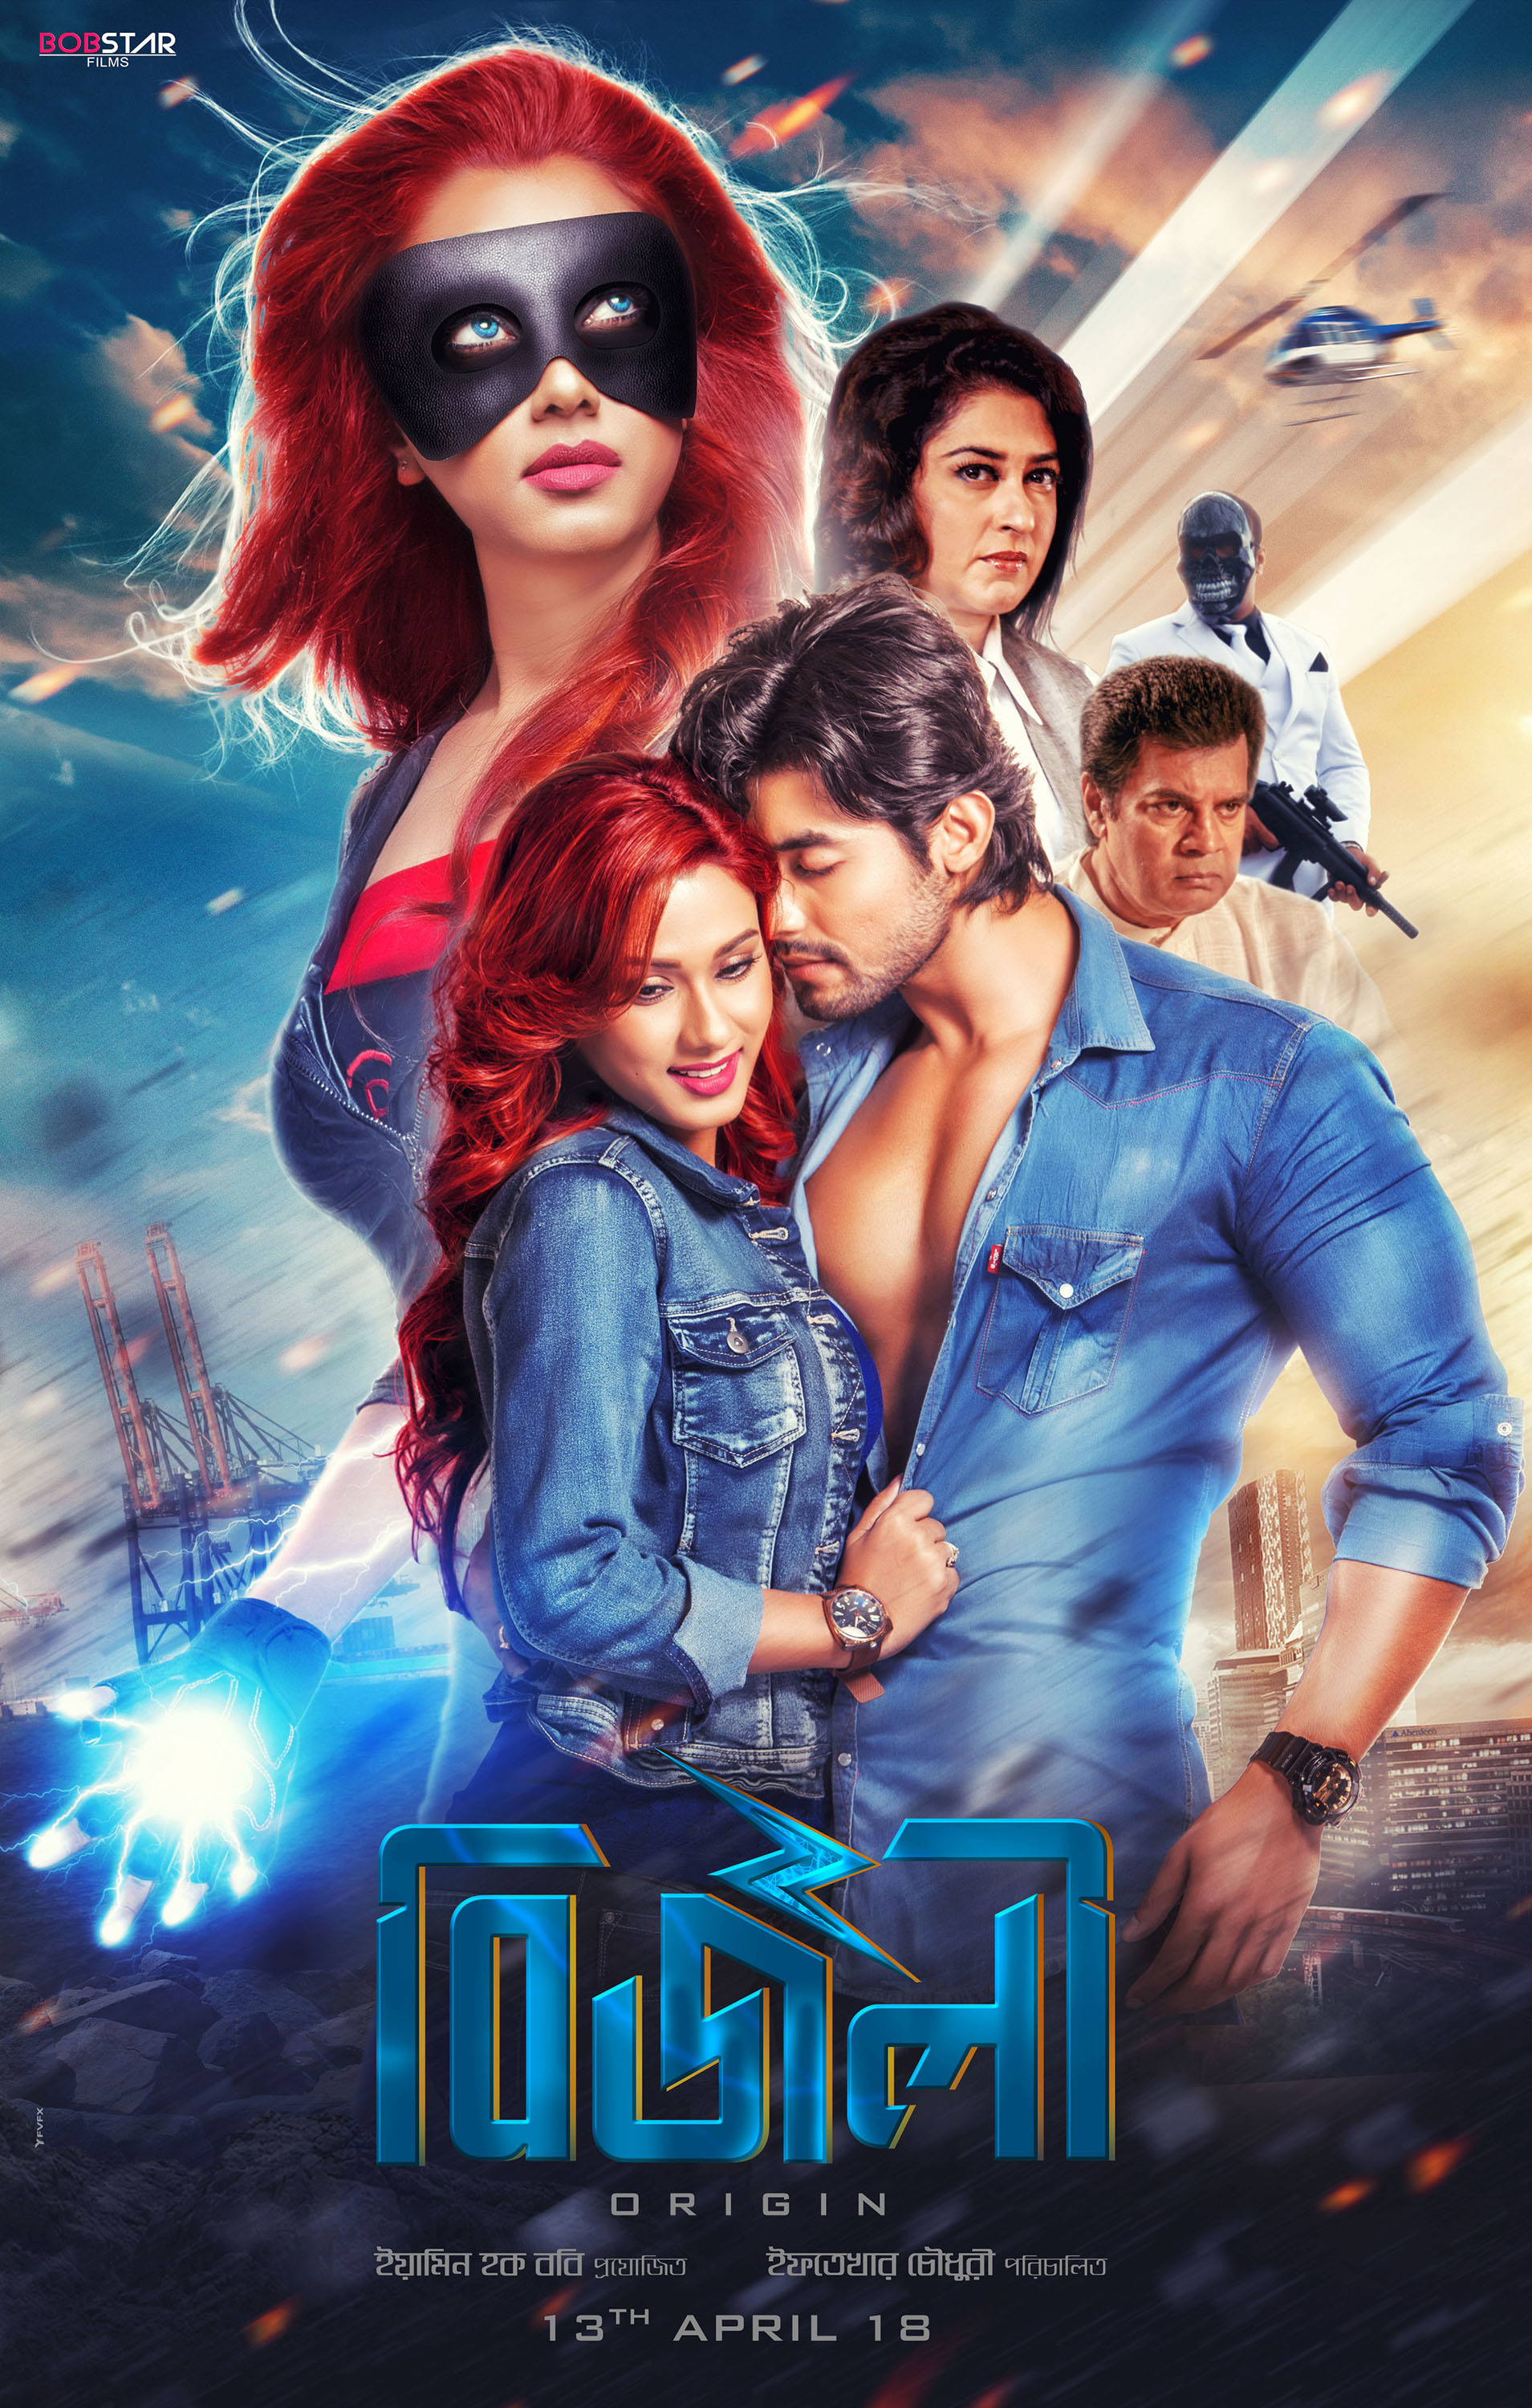 Mega Sized Movie Poster Image for Bizli: Origin (#4 of 7)